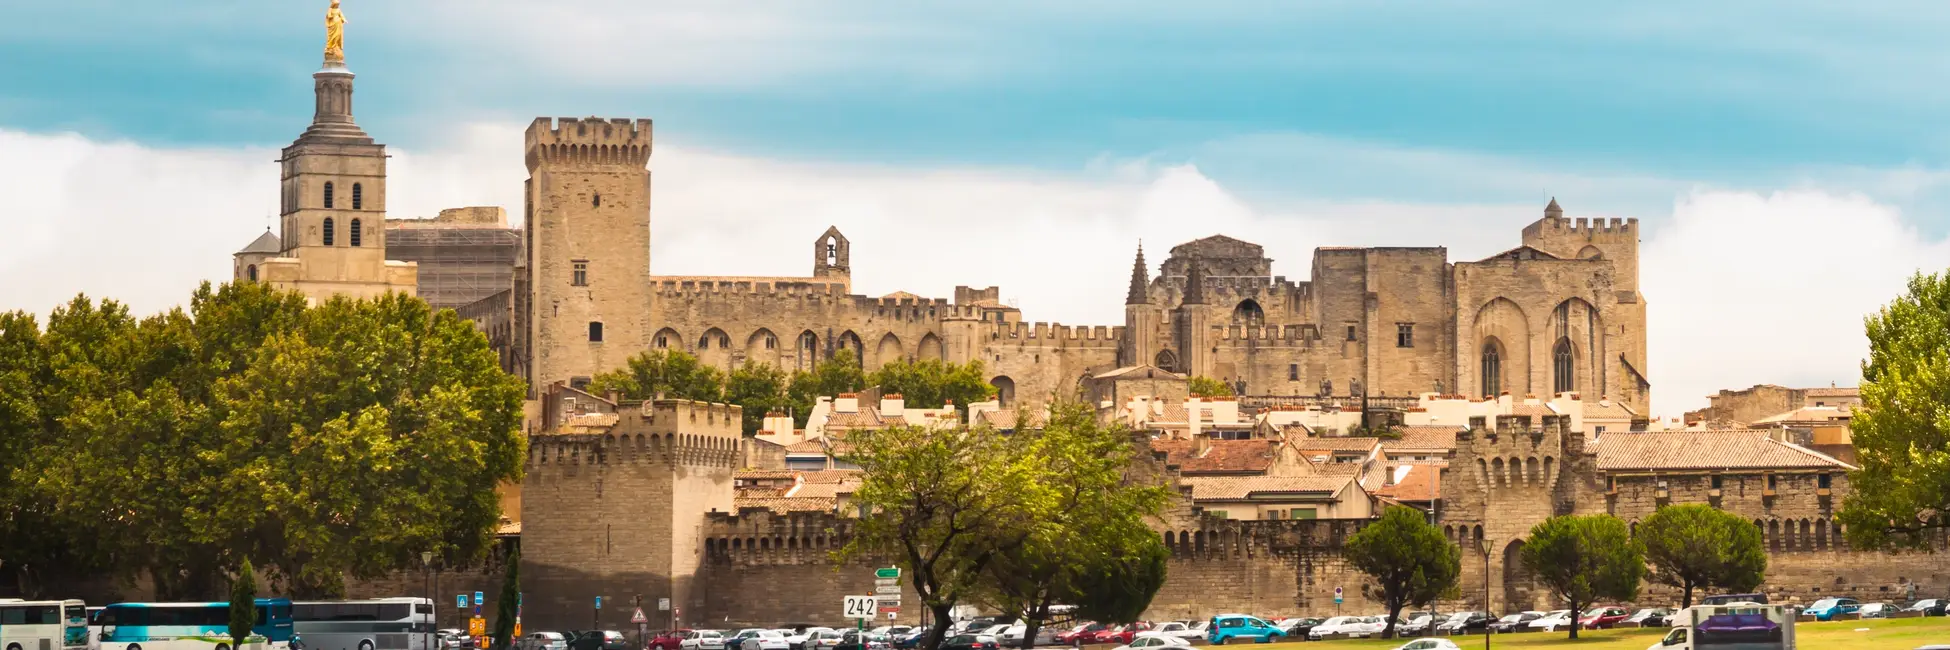 Les forteresses d'Avignon